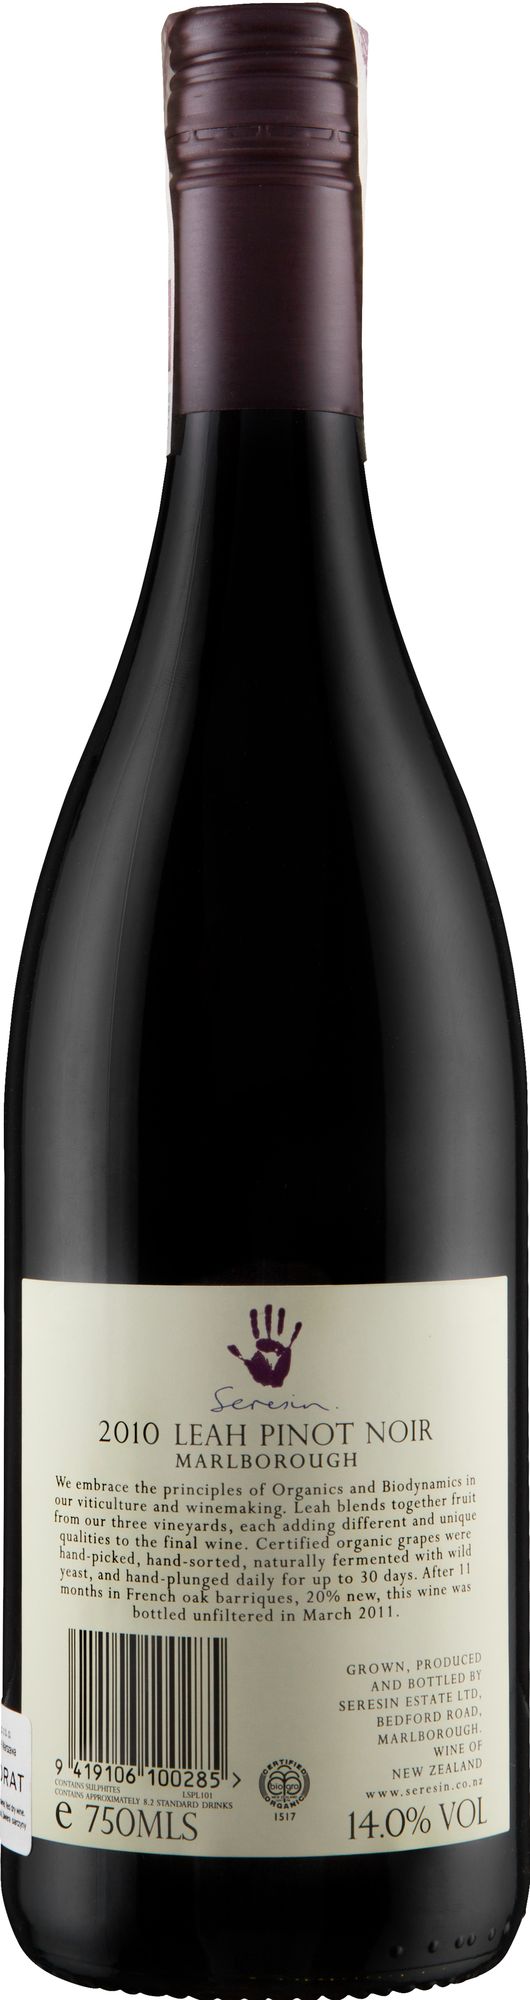 Wino Seresin Leah Pinot Noir Marlborough